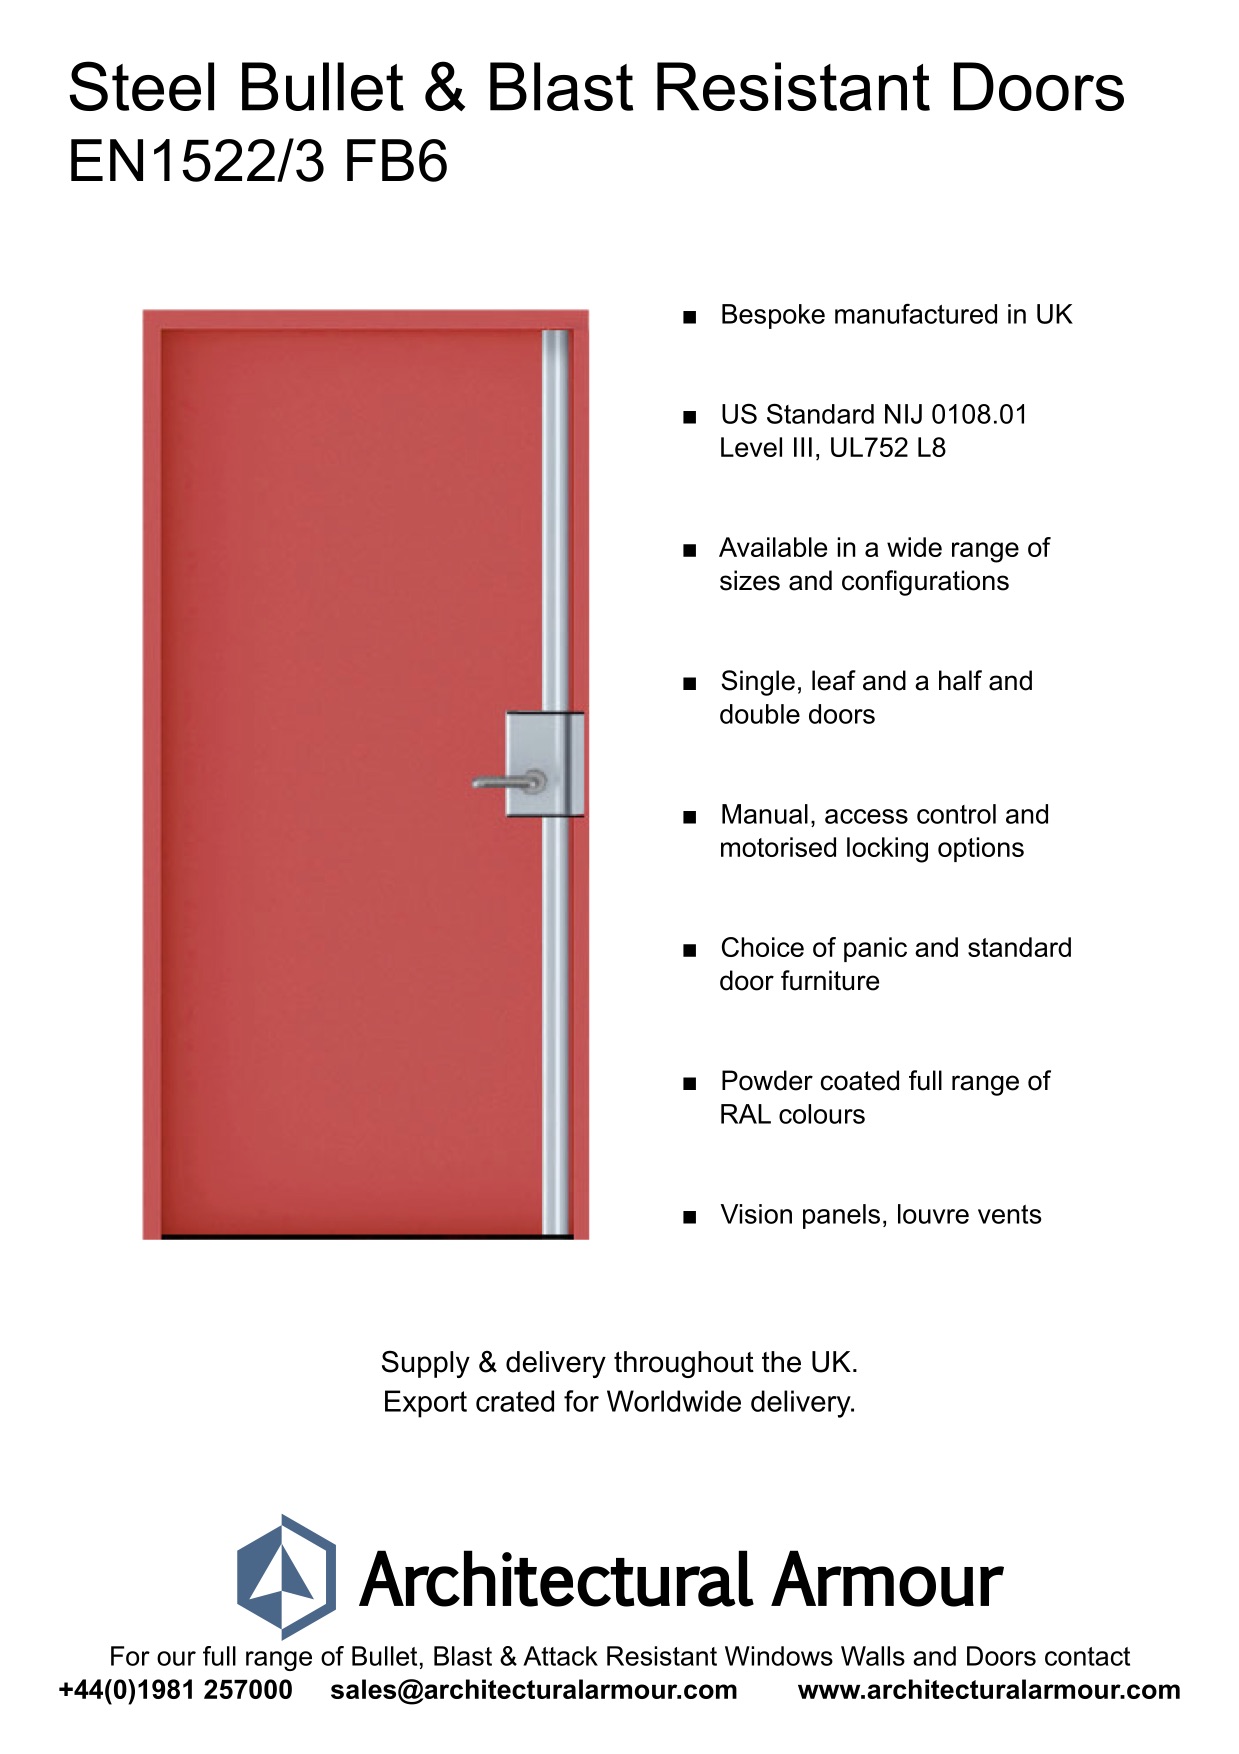 Blast-and-Bullet-Resistant-Steel-Door-UK-EN1522-3-FB6